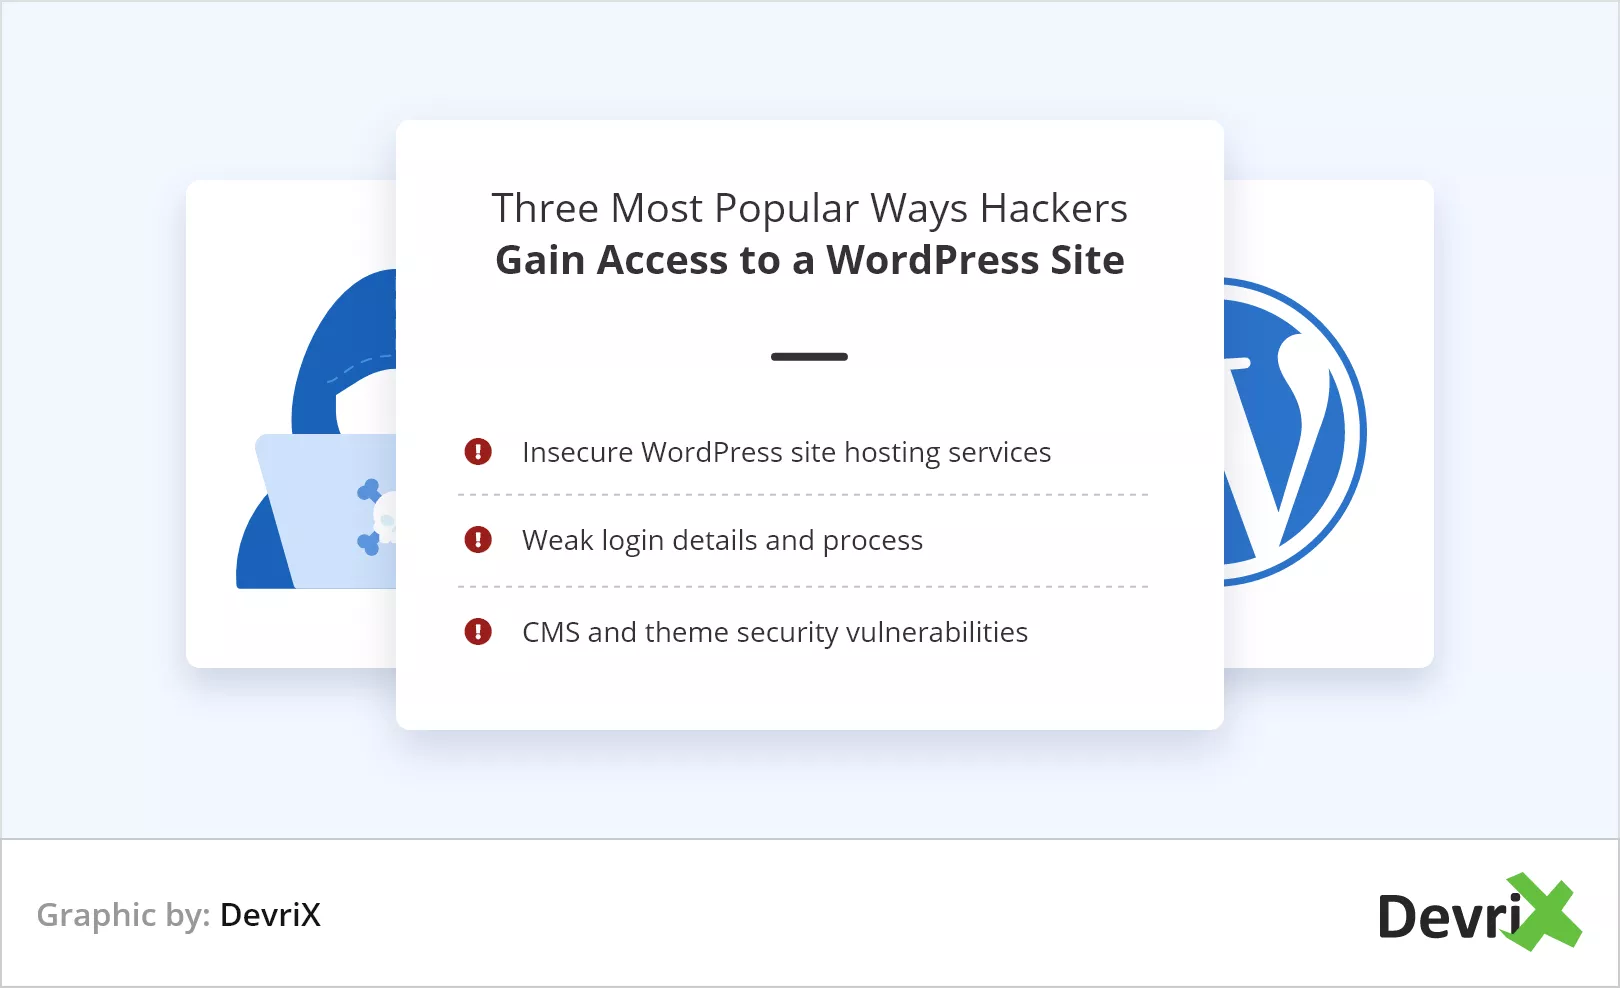 I tre modi più popolari con cui gli hacker ottengono l'accesso